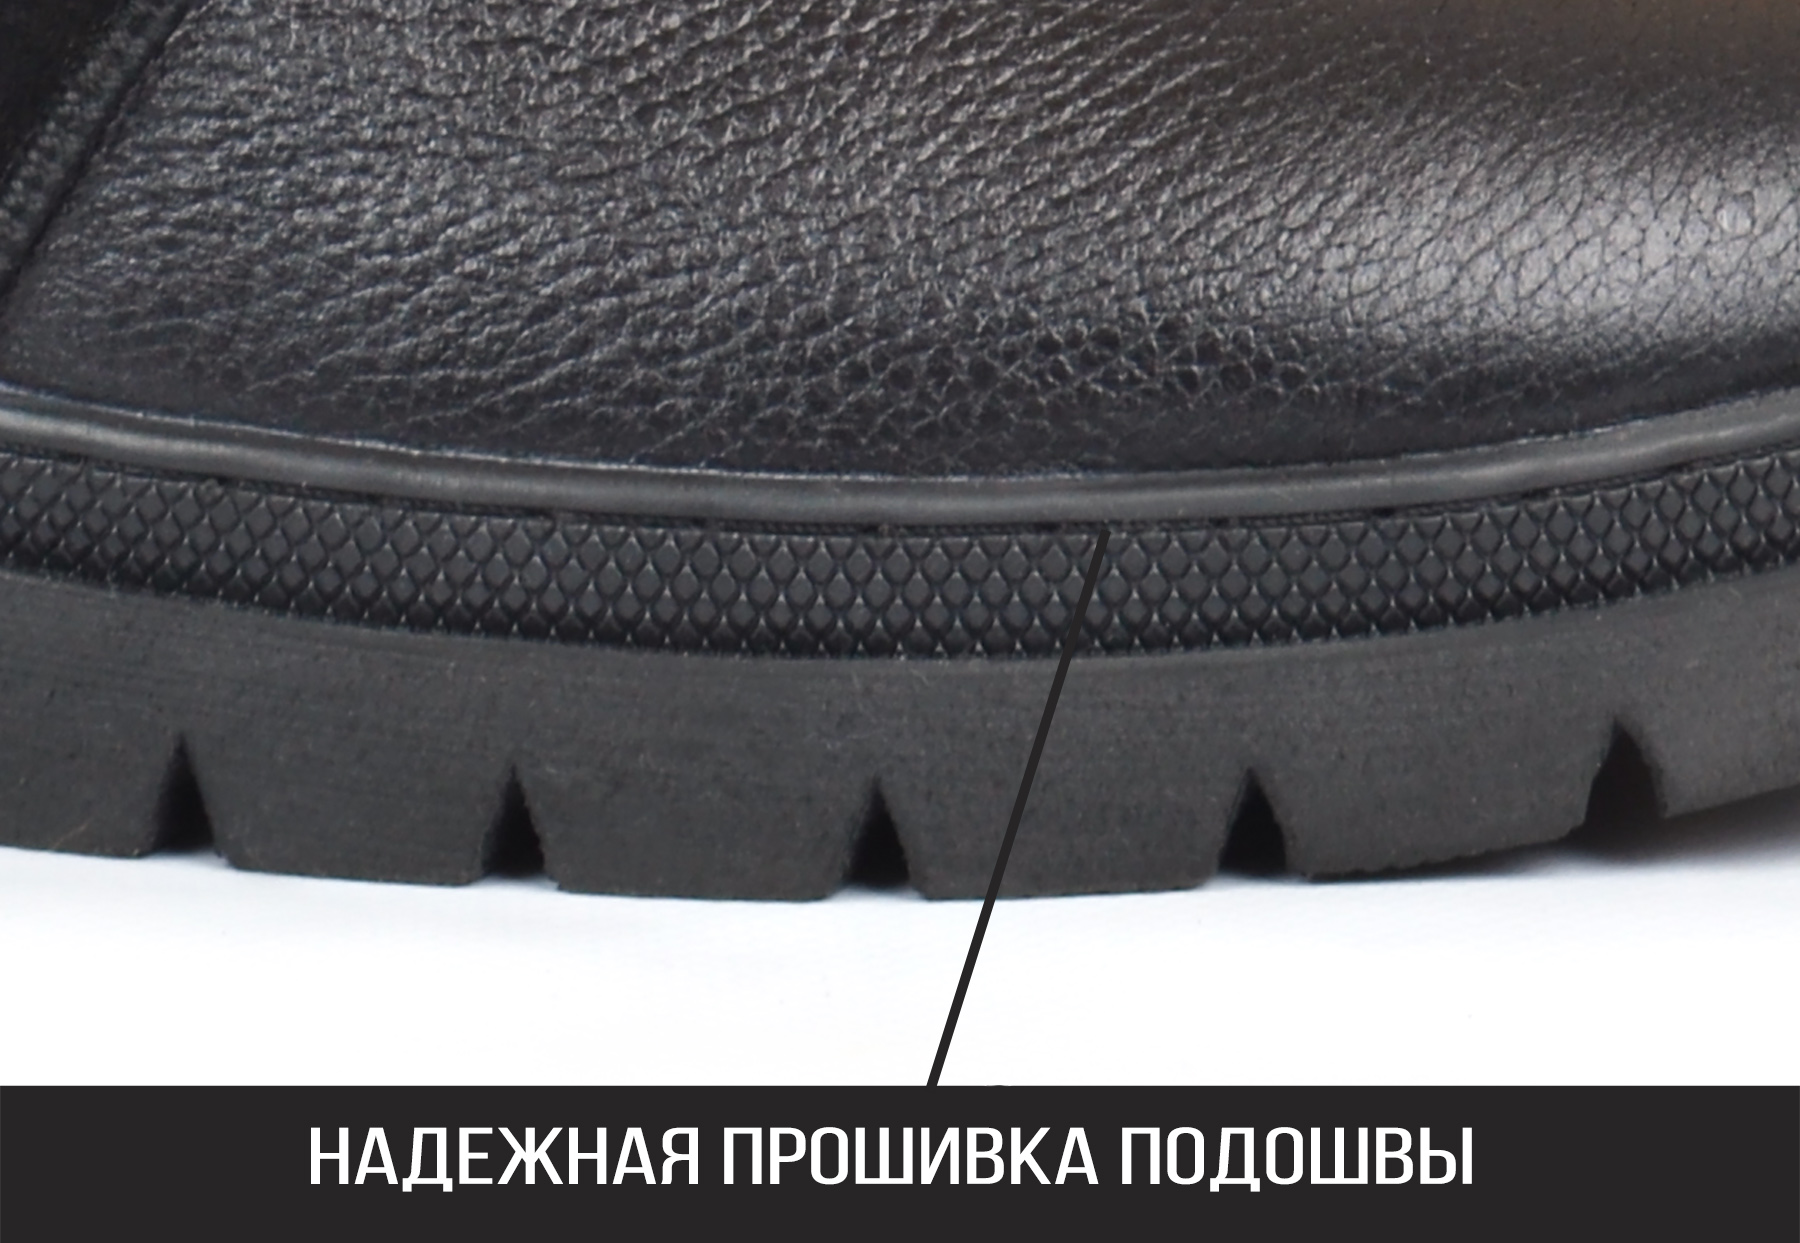 Мужские кожаные угги Richi Black со 100% натуральным мехом и прошитой подошвой купить в Украине. 